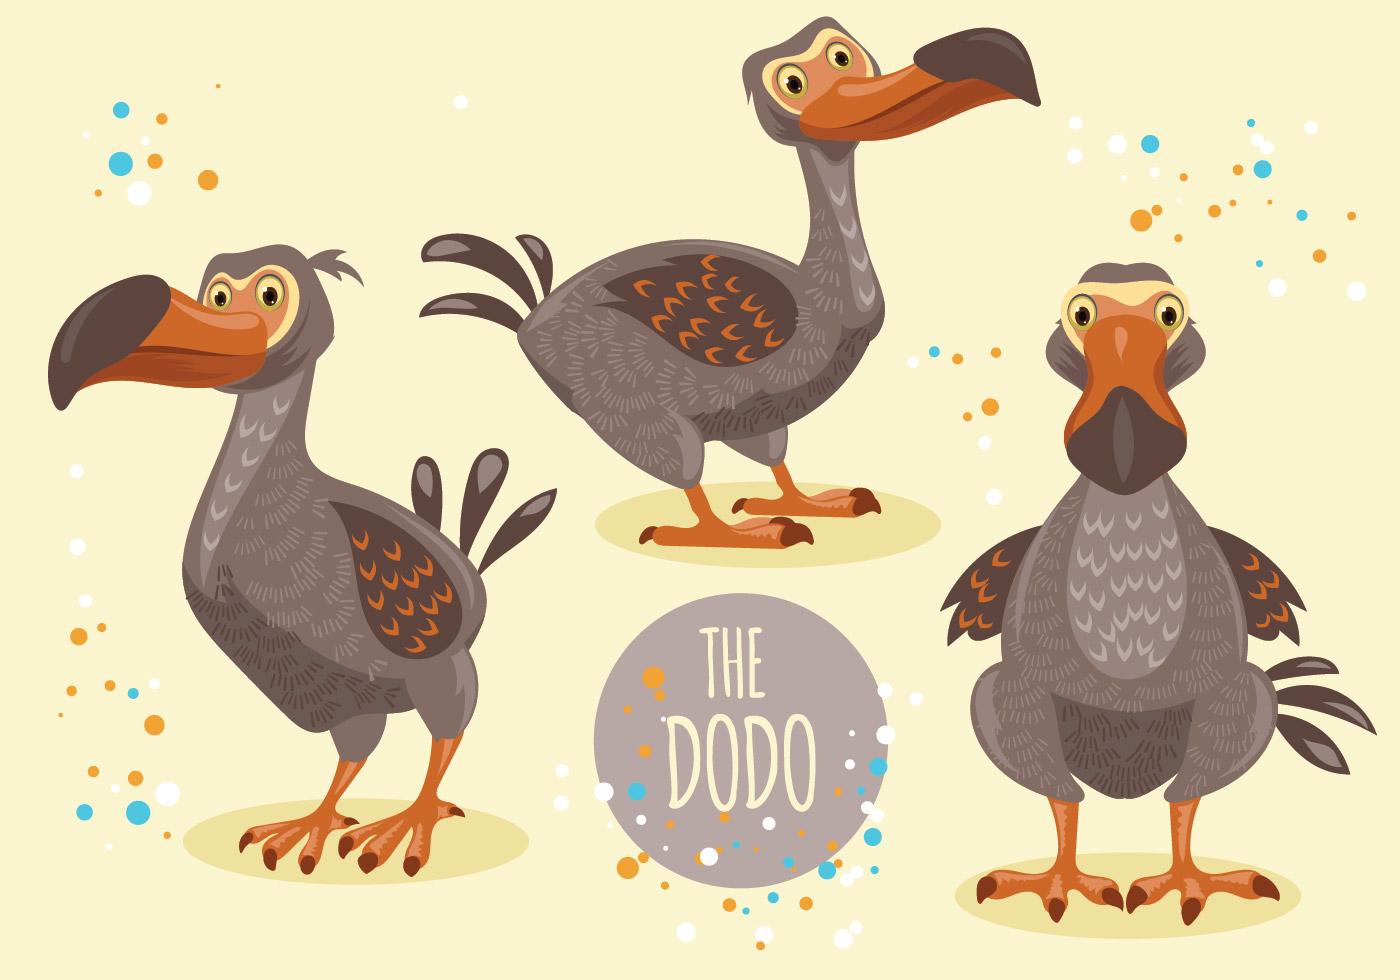 Dodo Bird Cartoon Character Collection 147034 Vector Art at Vecteezy